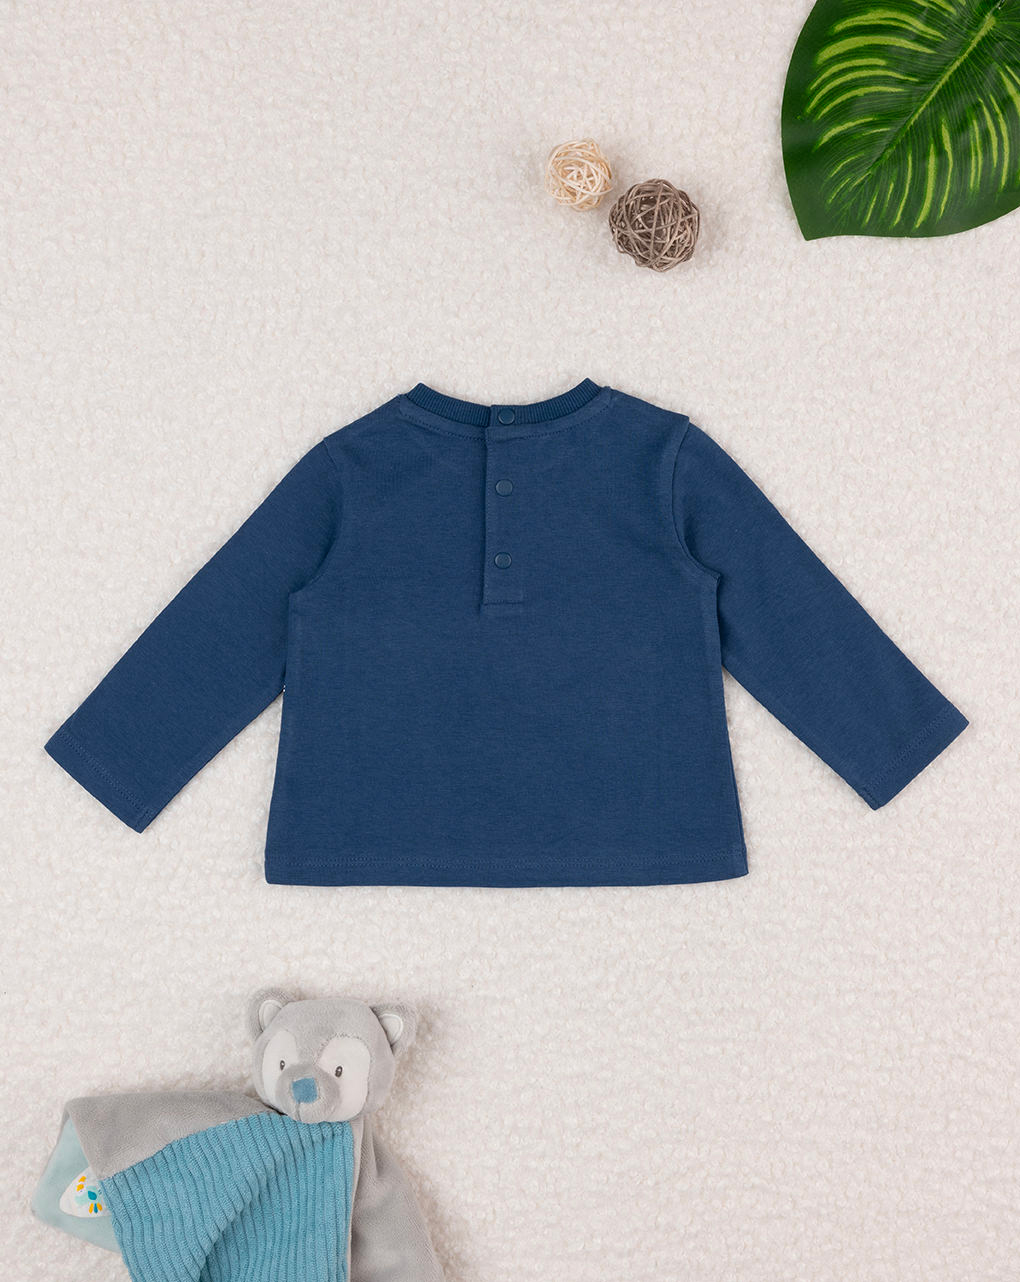 βρεφική μπλούζα μπλε με ζωάκια για αγόρι - Prénatal